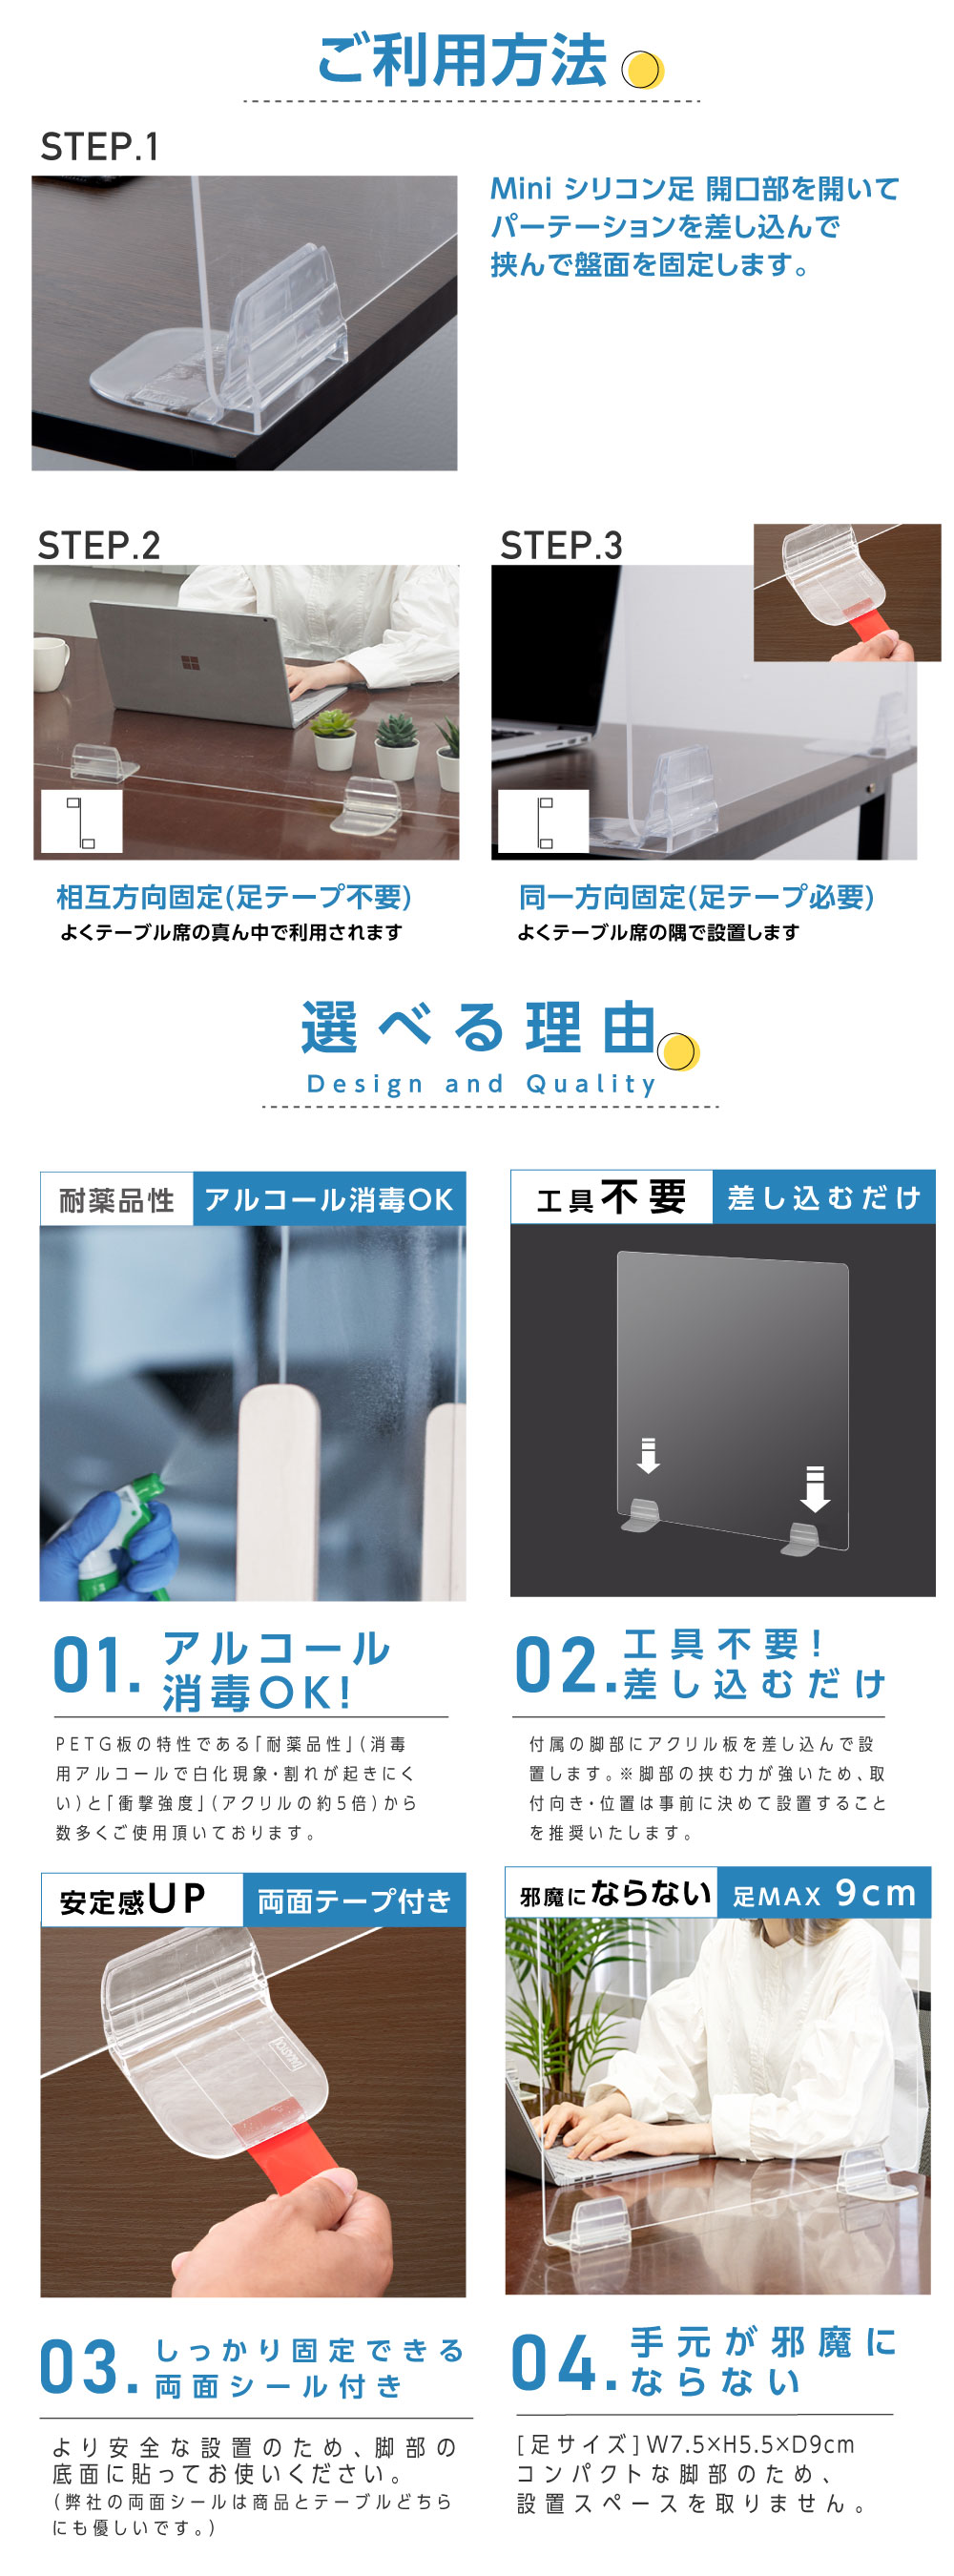 高昇ストア / お得な2枚セット 日本初！ SIAA認証 アルコール消毒可能 